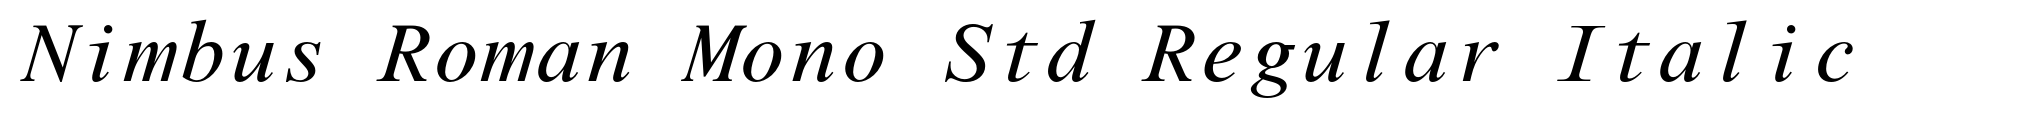 Nimbus Roman Mono Std Regular Italic image